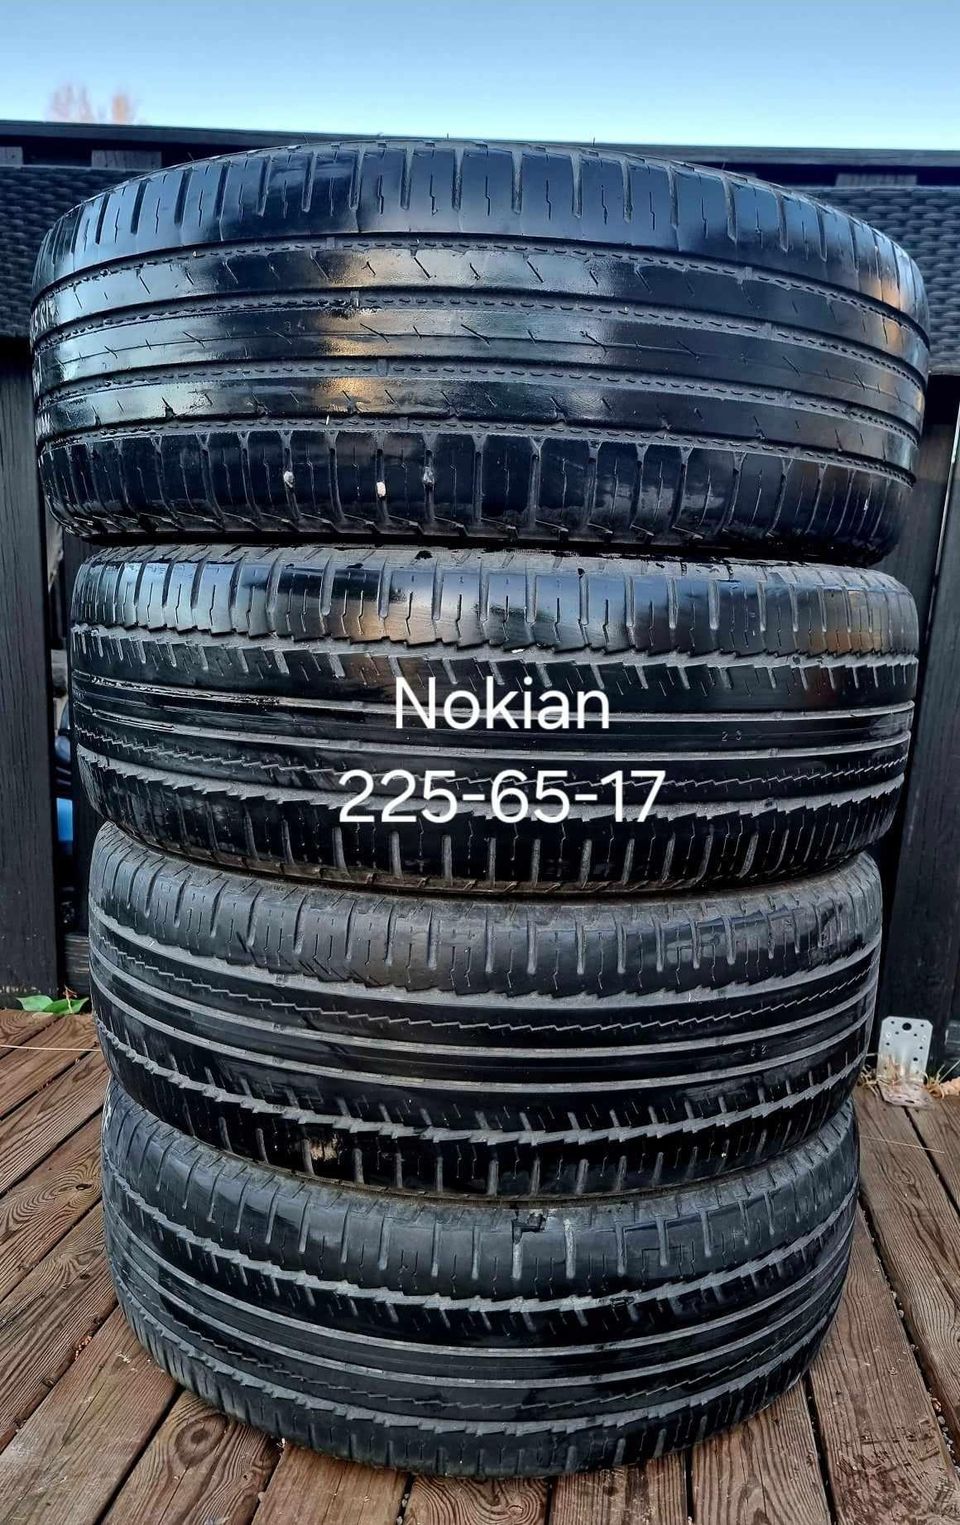 Nokian 225-65-17 kesärenkaat